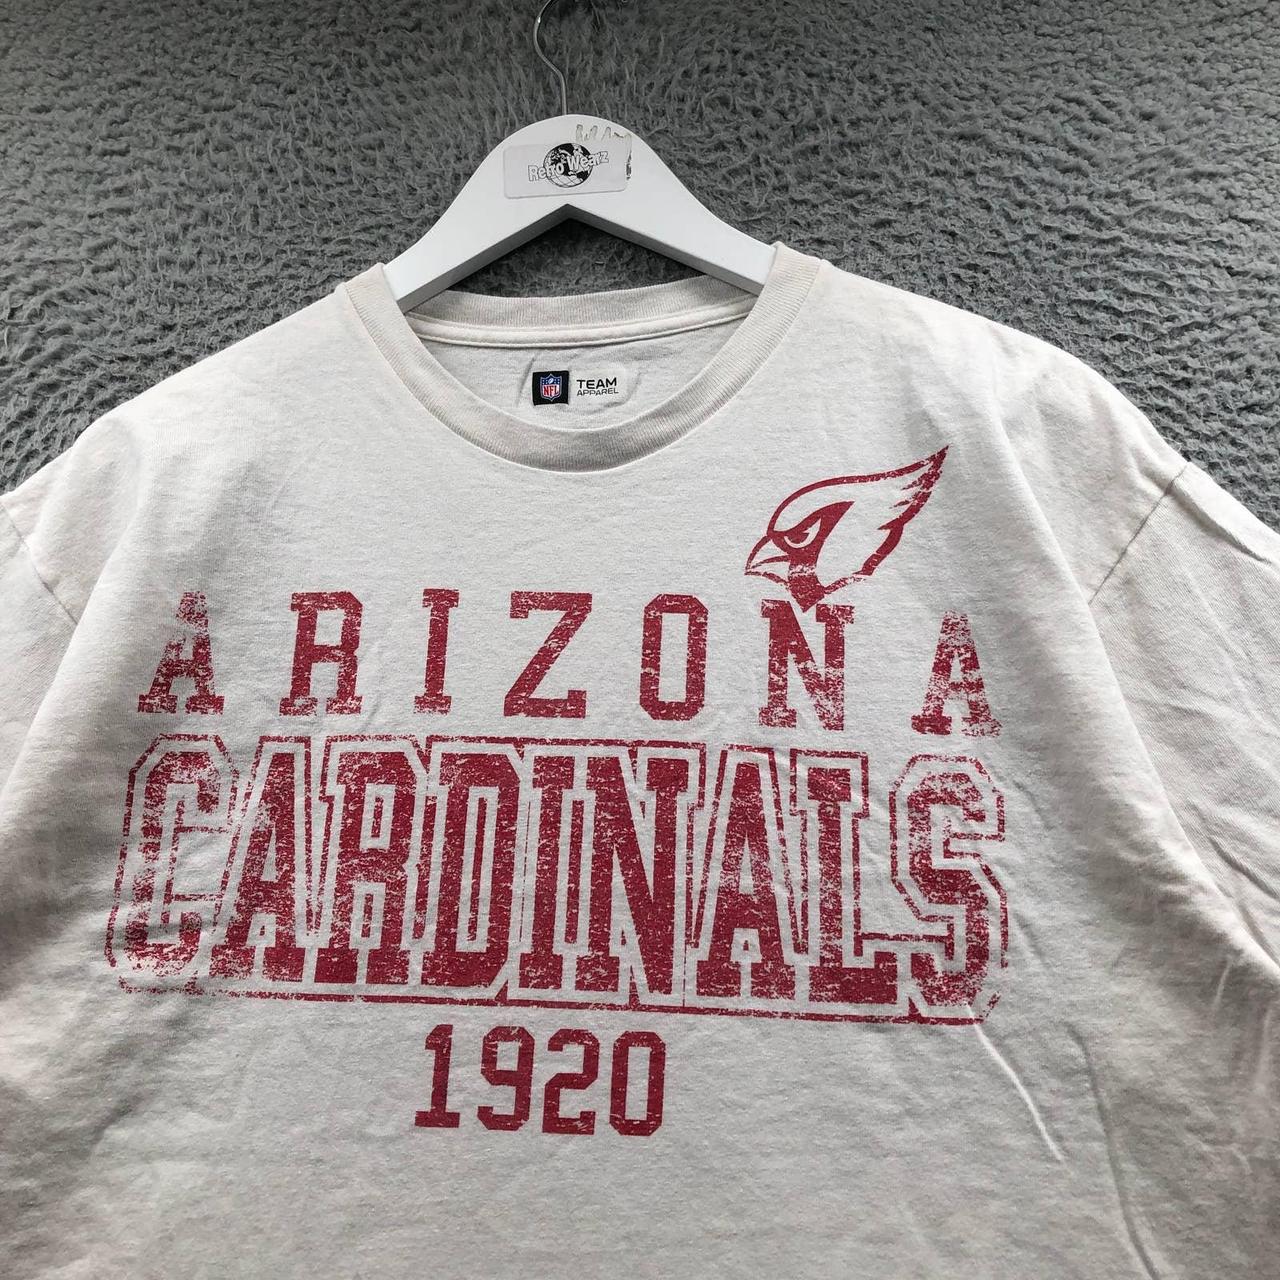 For Sale: Item Name: Arizona Cardinals NFL Tommy - Depop